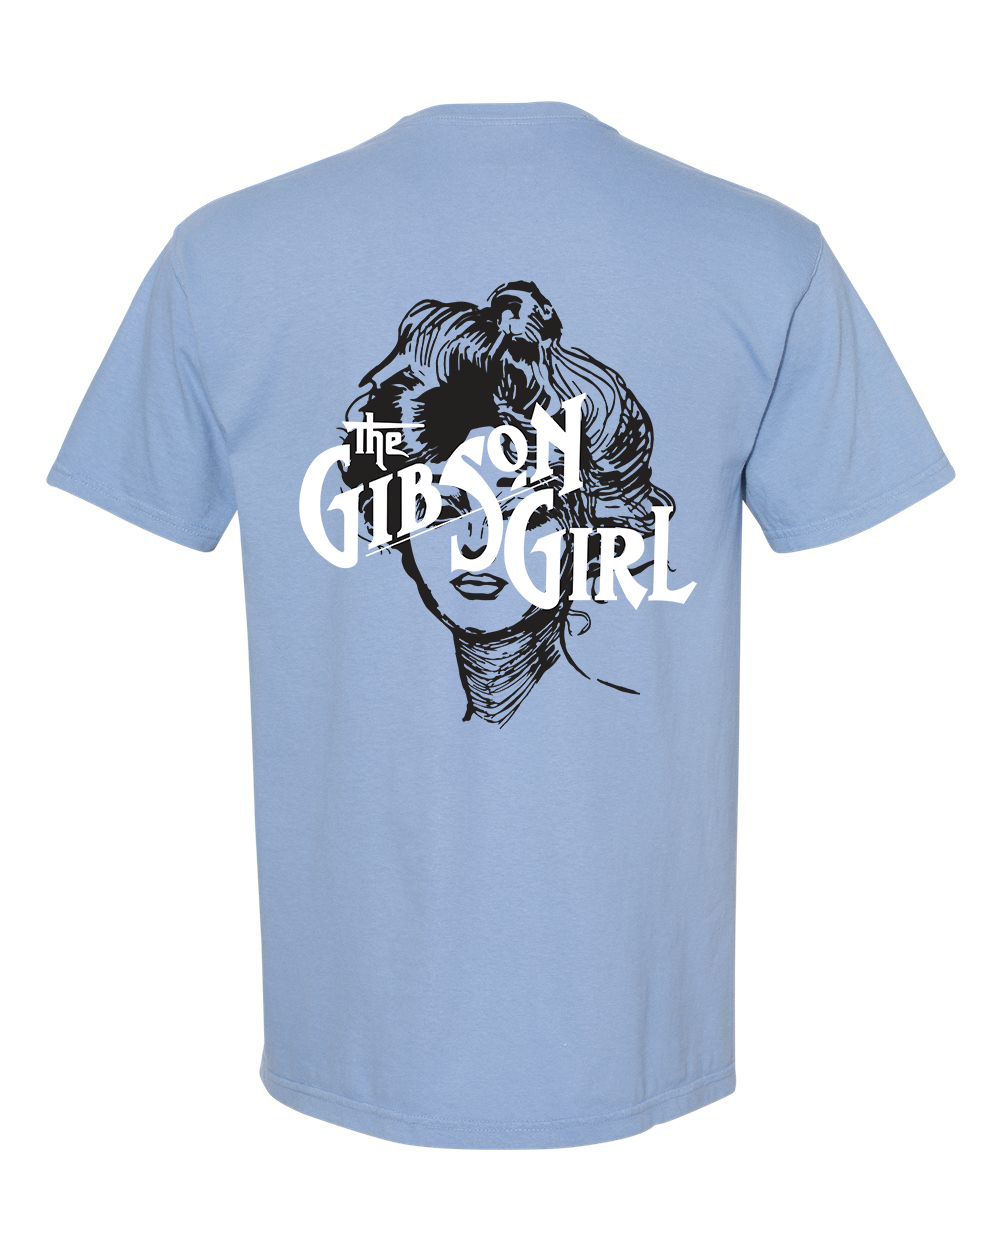 Gibson Girl unisex short sleeve t-shirt